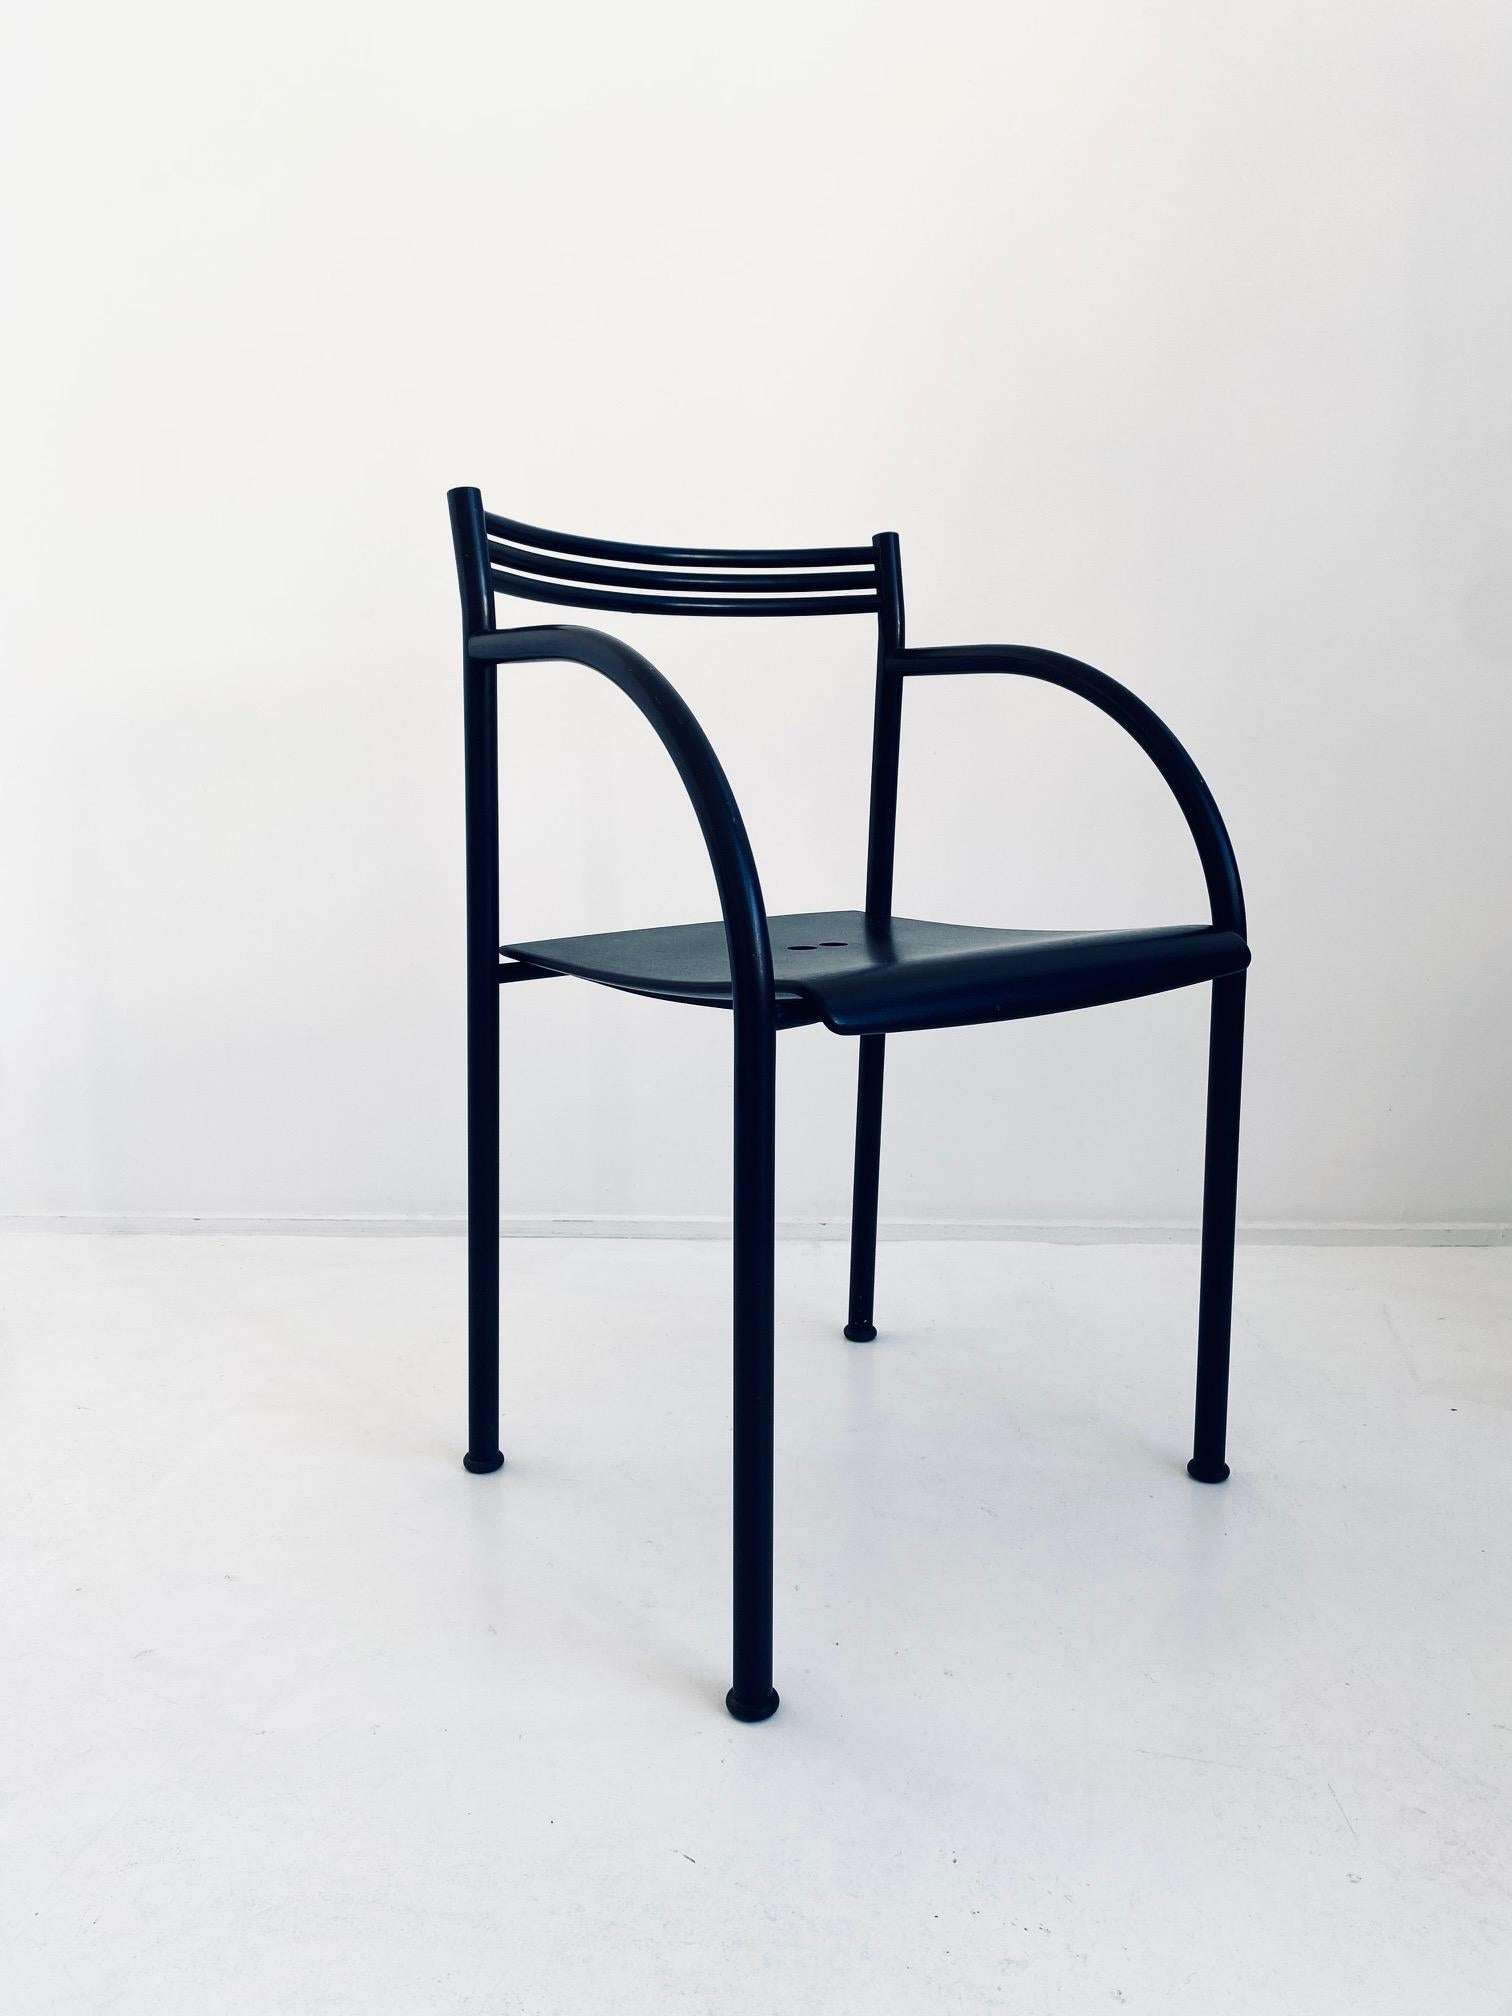 Structure en métal avec revêtement noir et assise en plastique.

Magnifique état d'origine, avec quelques très petits défauts dus à l'âge. Très petites taches avec perte de revêtement.

Ces chaises sont appelées 